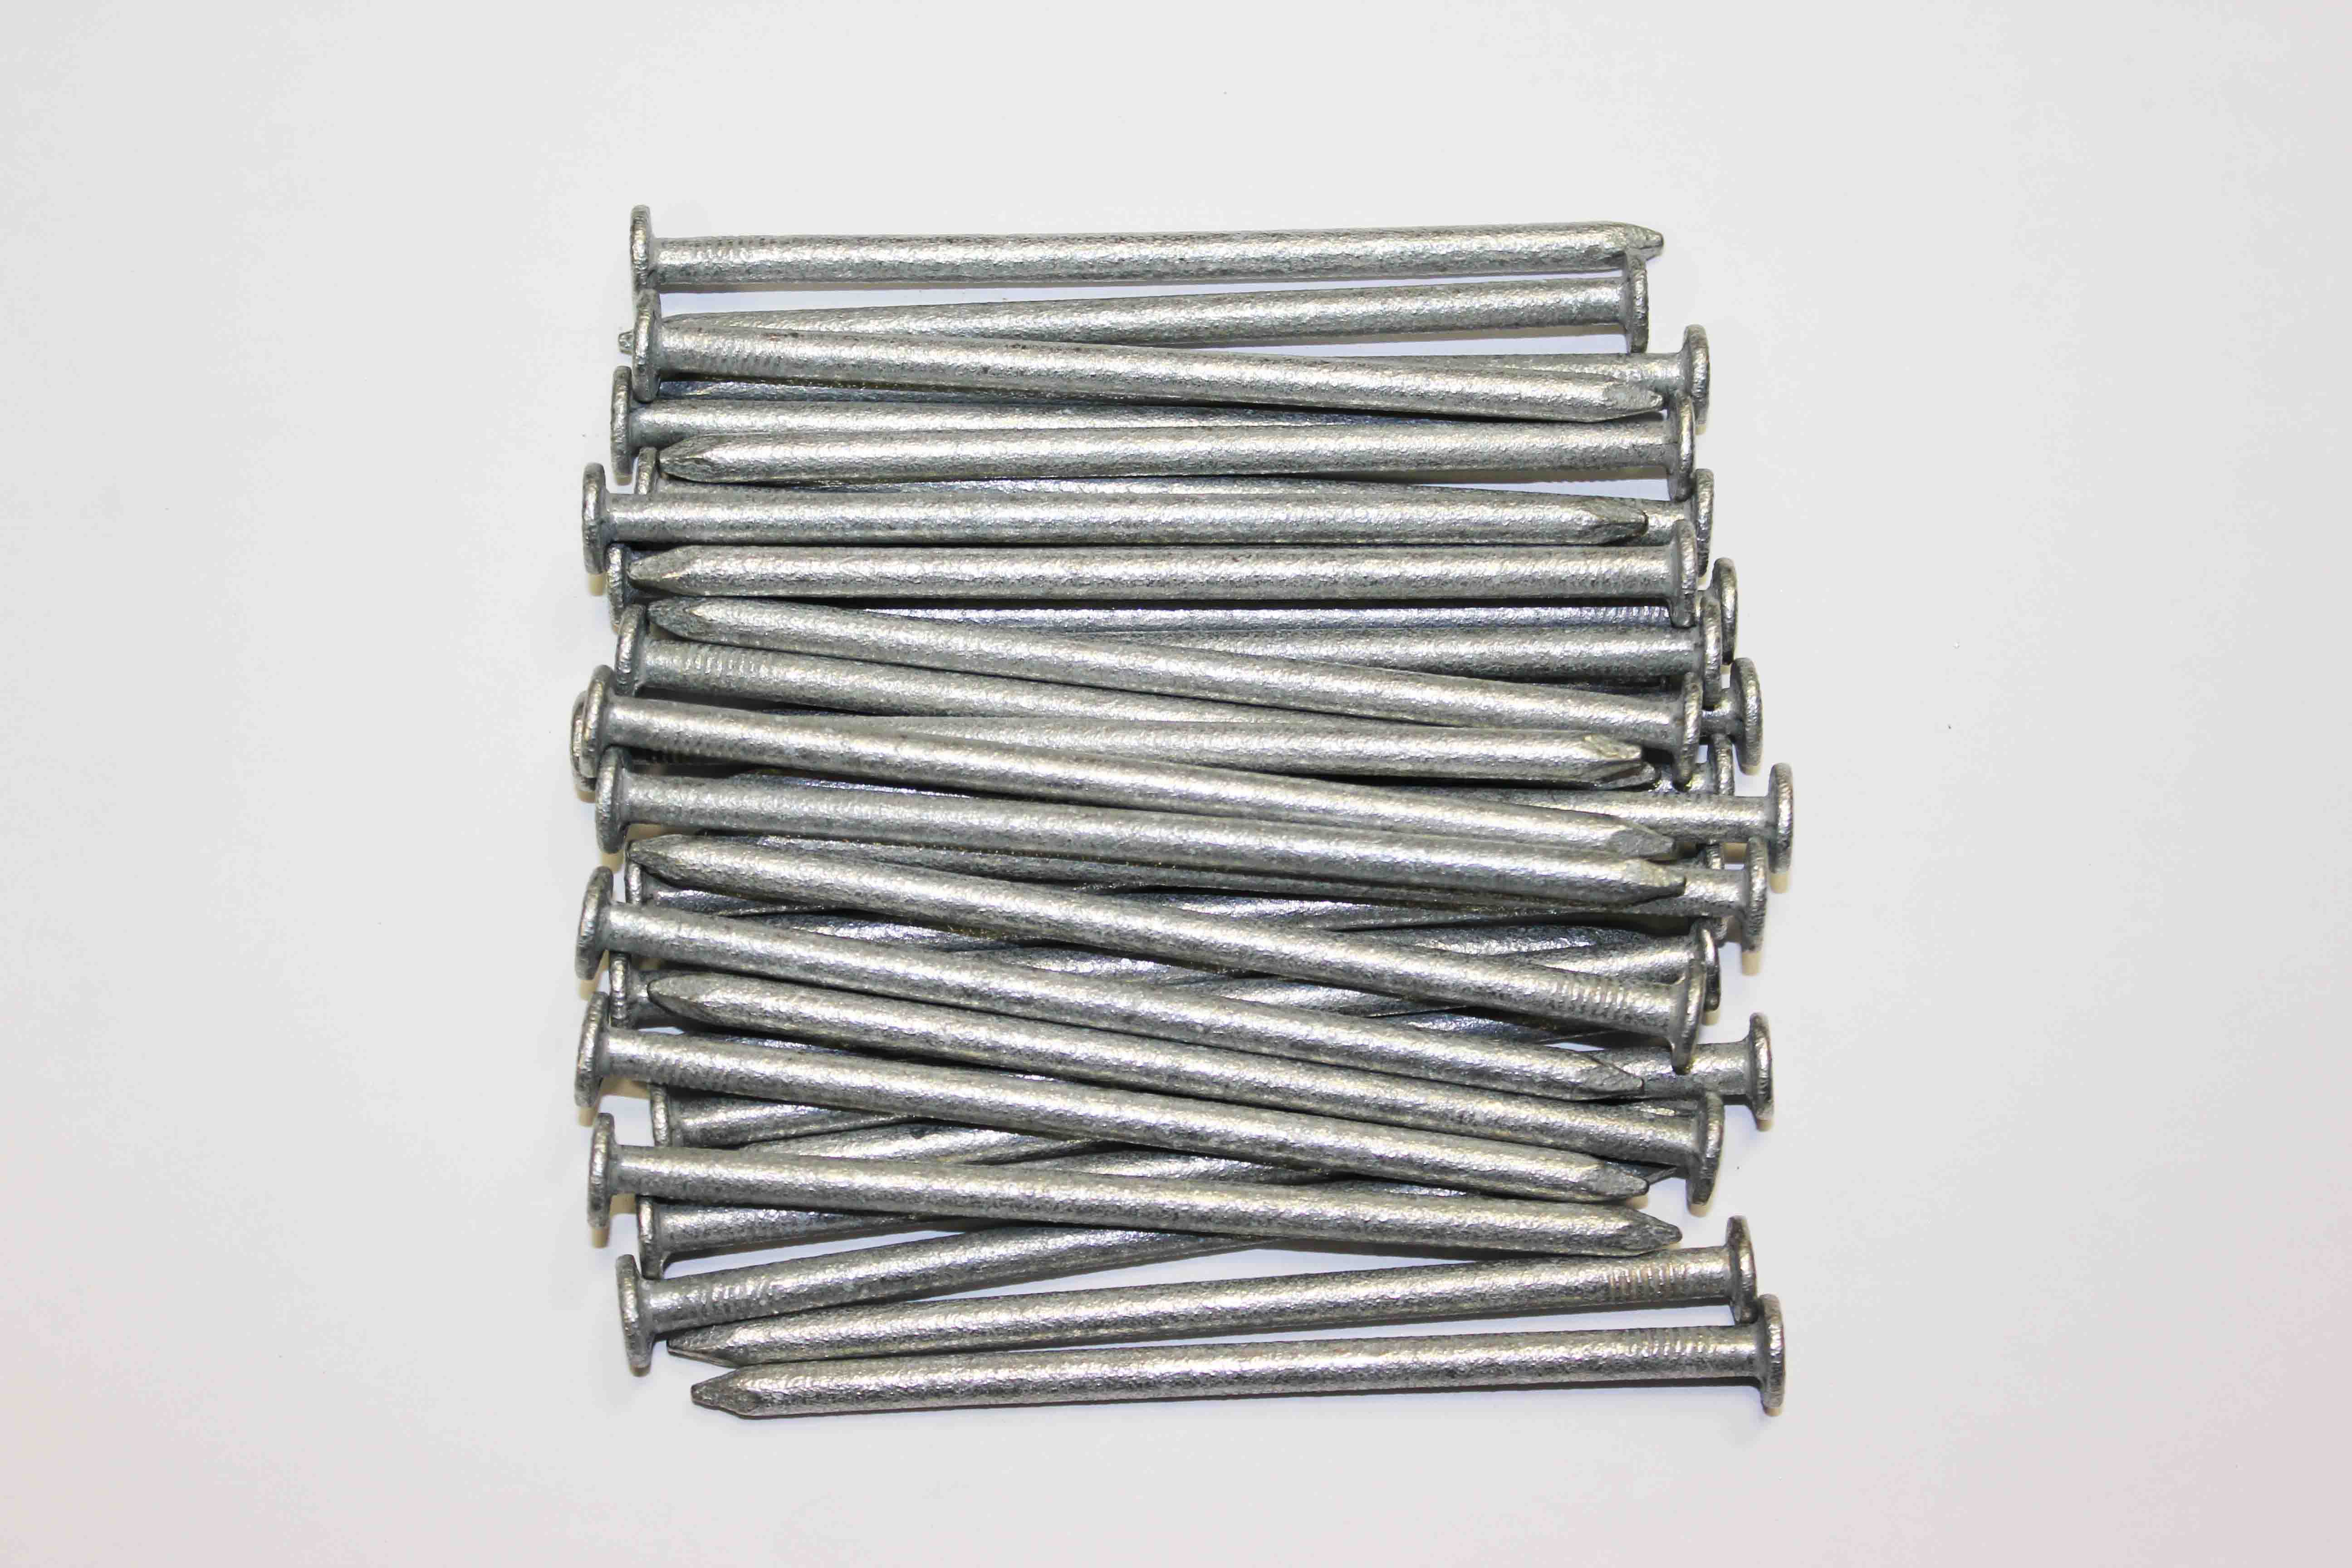 1 kg x 100 mm x 4 mm galvanised round wire head nails 